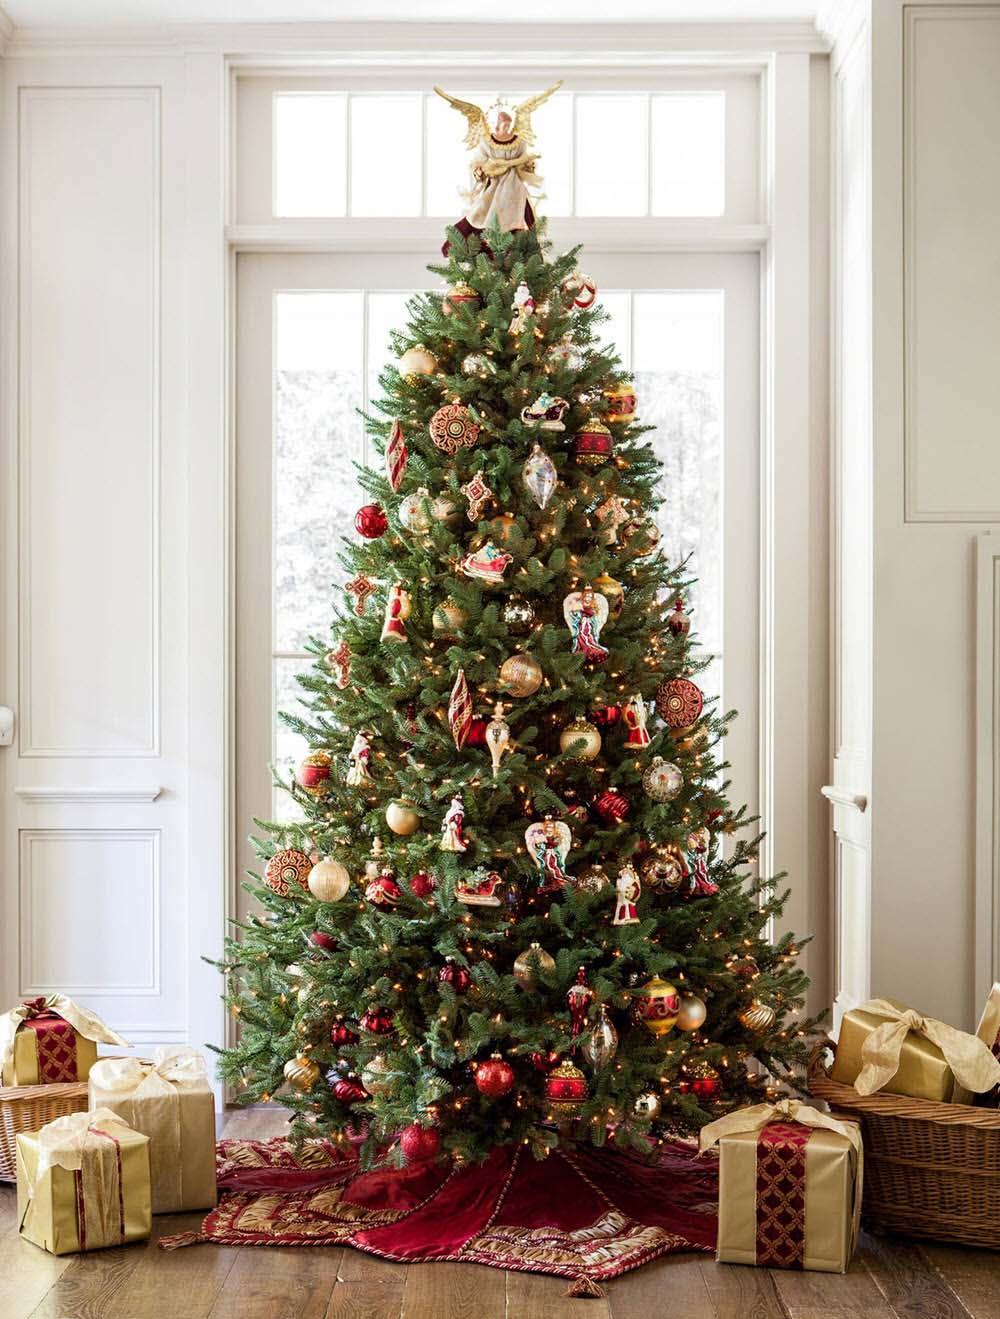 Hình ảnh cây thông trang trí đẹp cho mùa giáng sinh